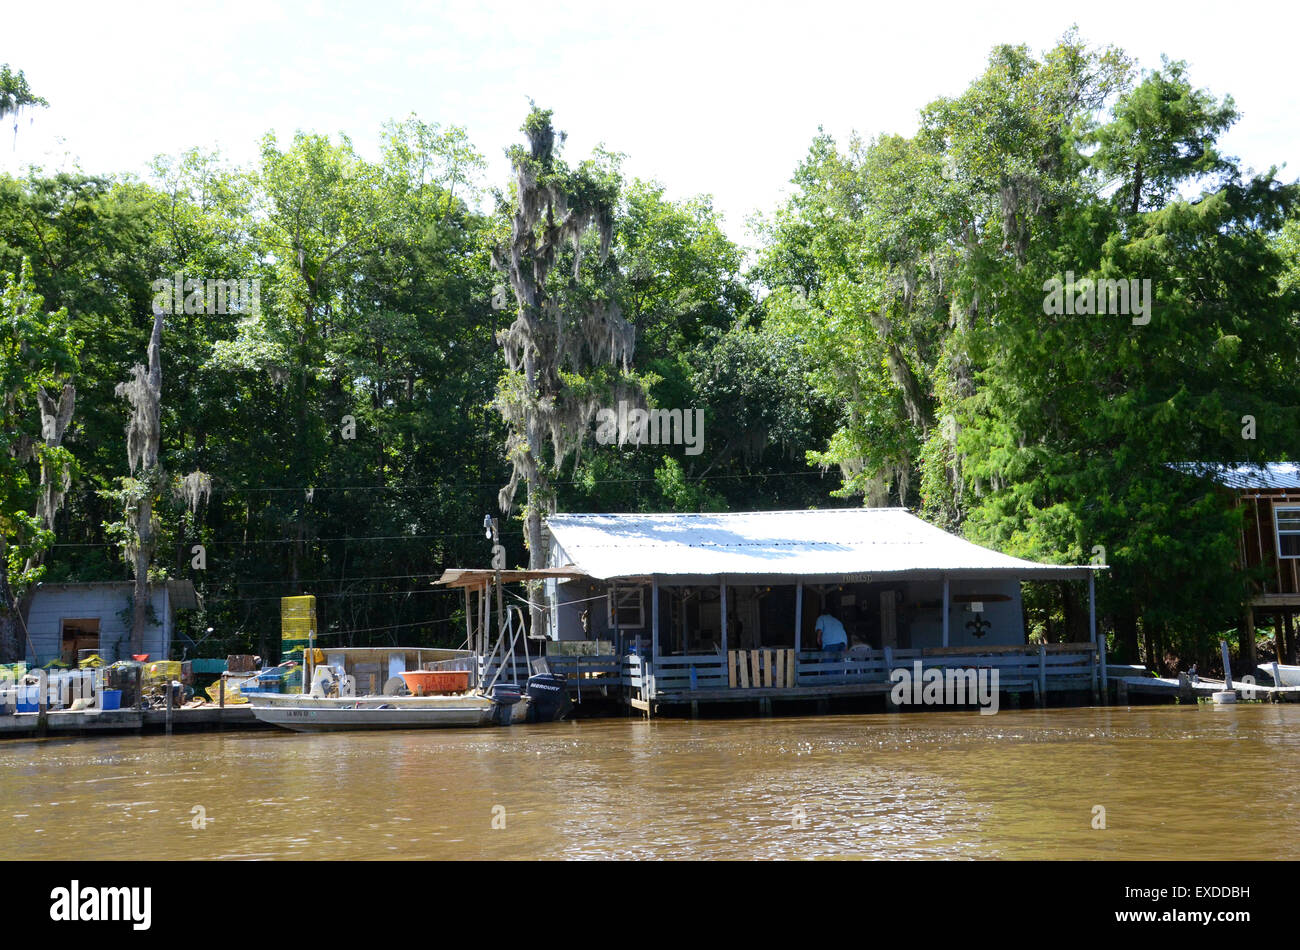 Villaggio cajun della Louisiana Swamp Pearl River bayou new orleans Foto Stock